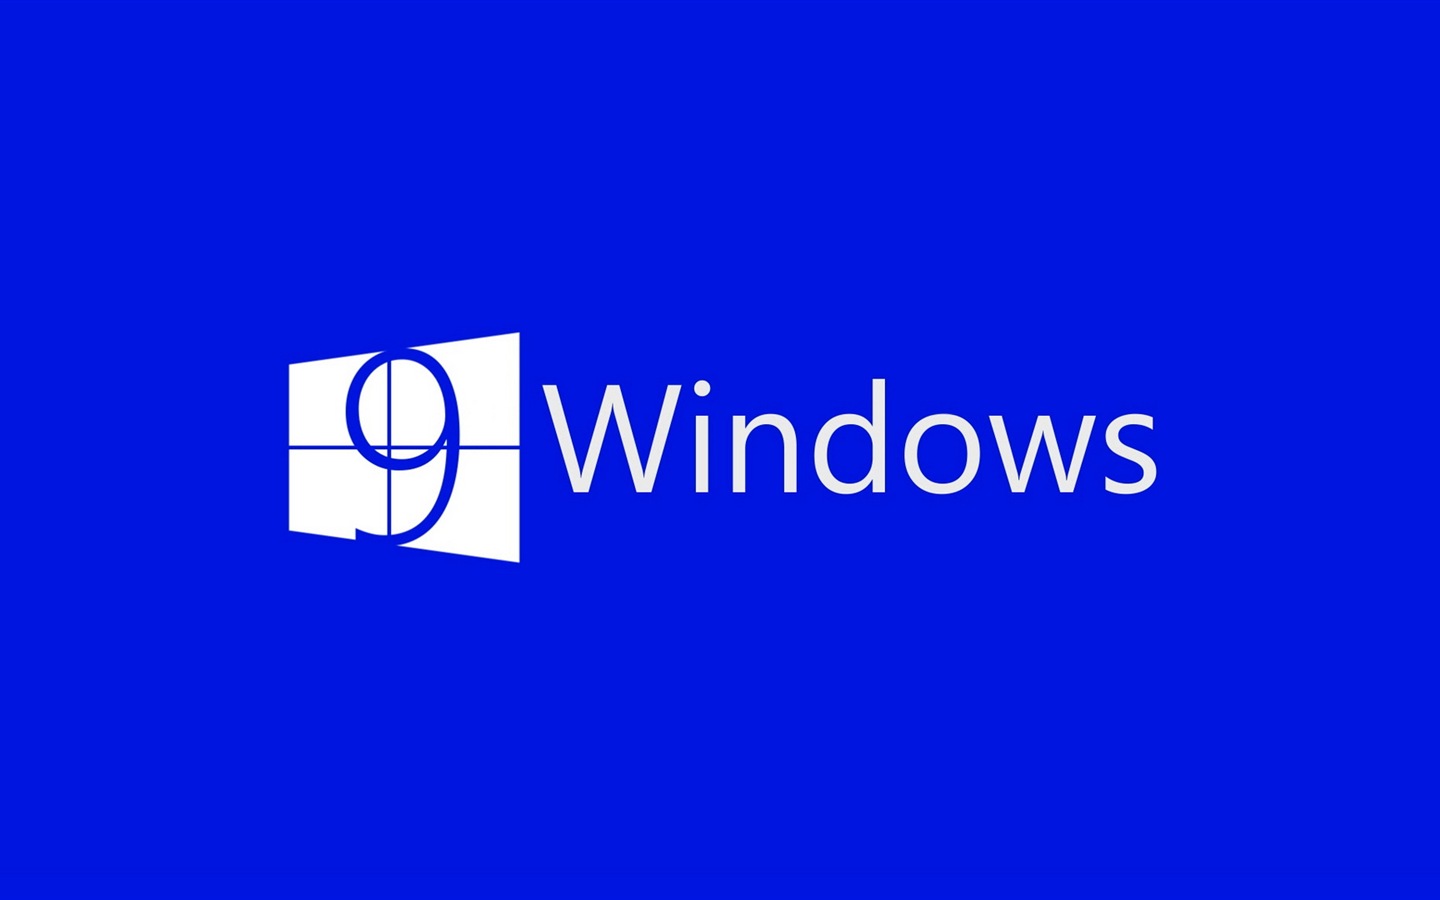 Microsoft Windowsの9システムテーマのHD壁紙 #4 - 1440x900